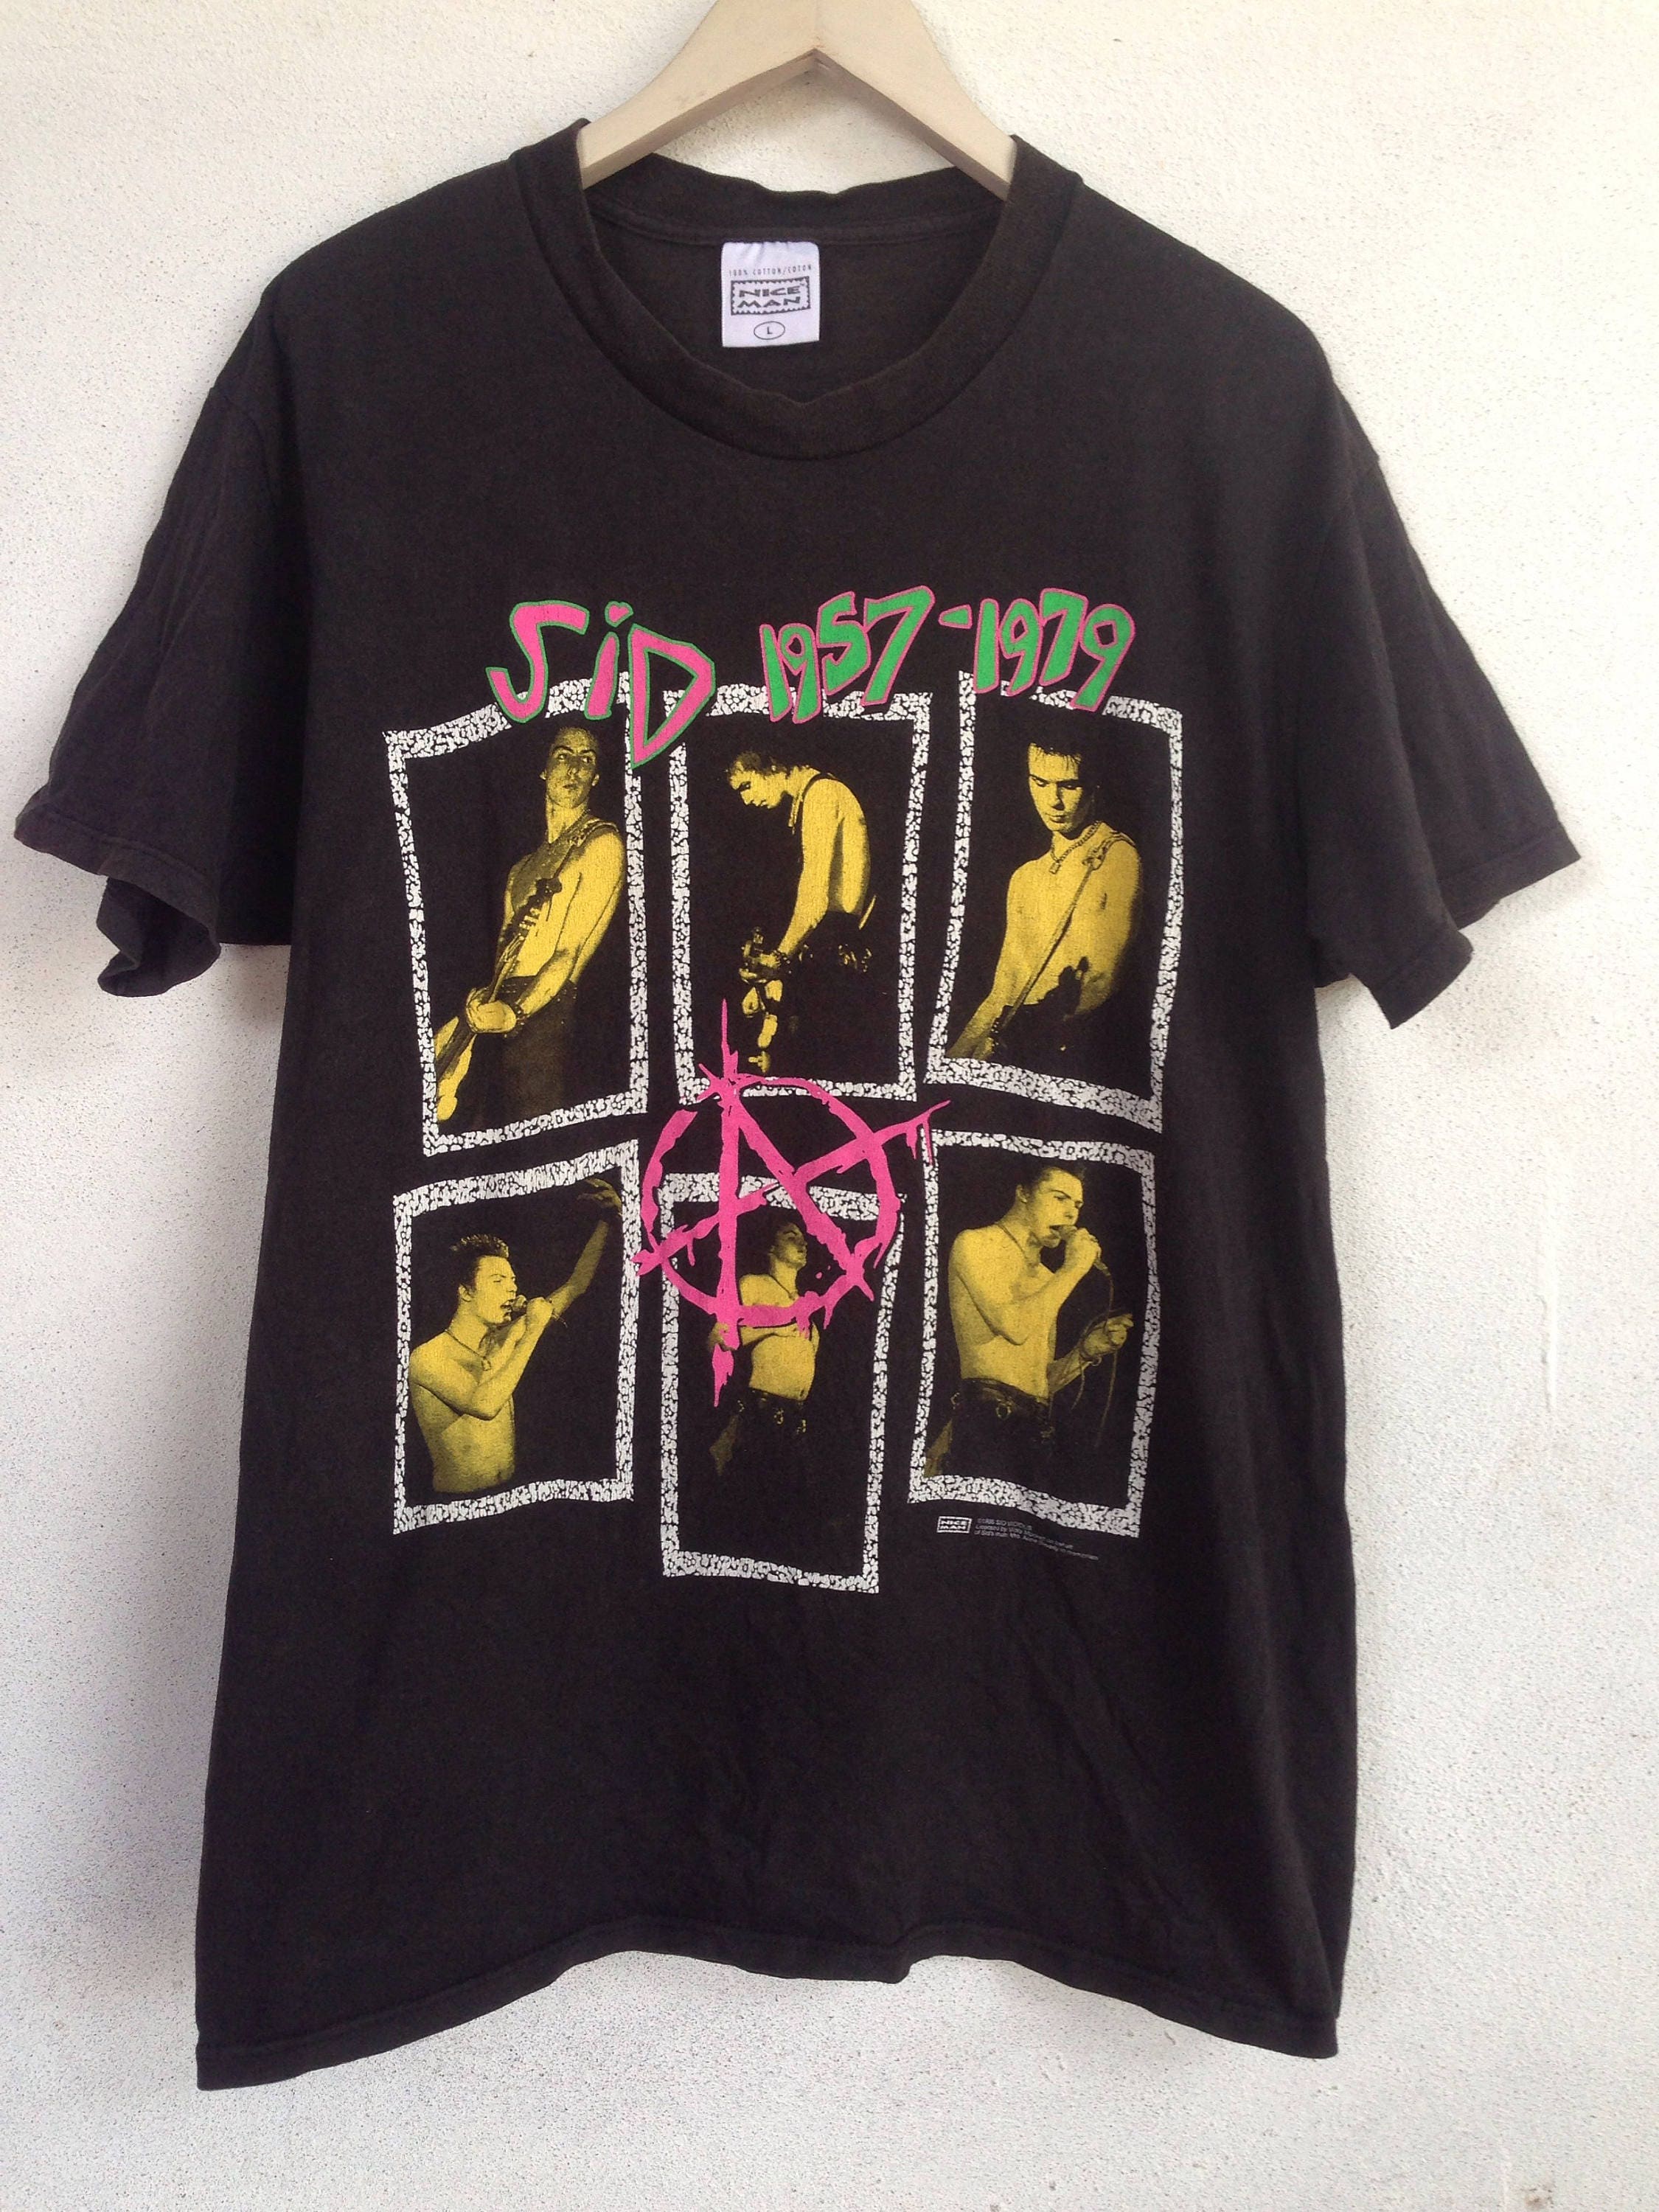 Vintage 90s Sid Vicious Sex Pistols punk band tshirt L - Etsy 日本